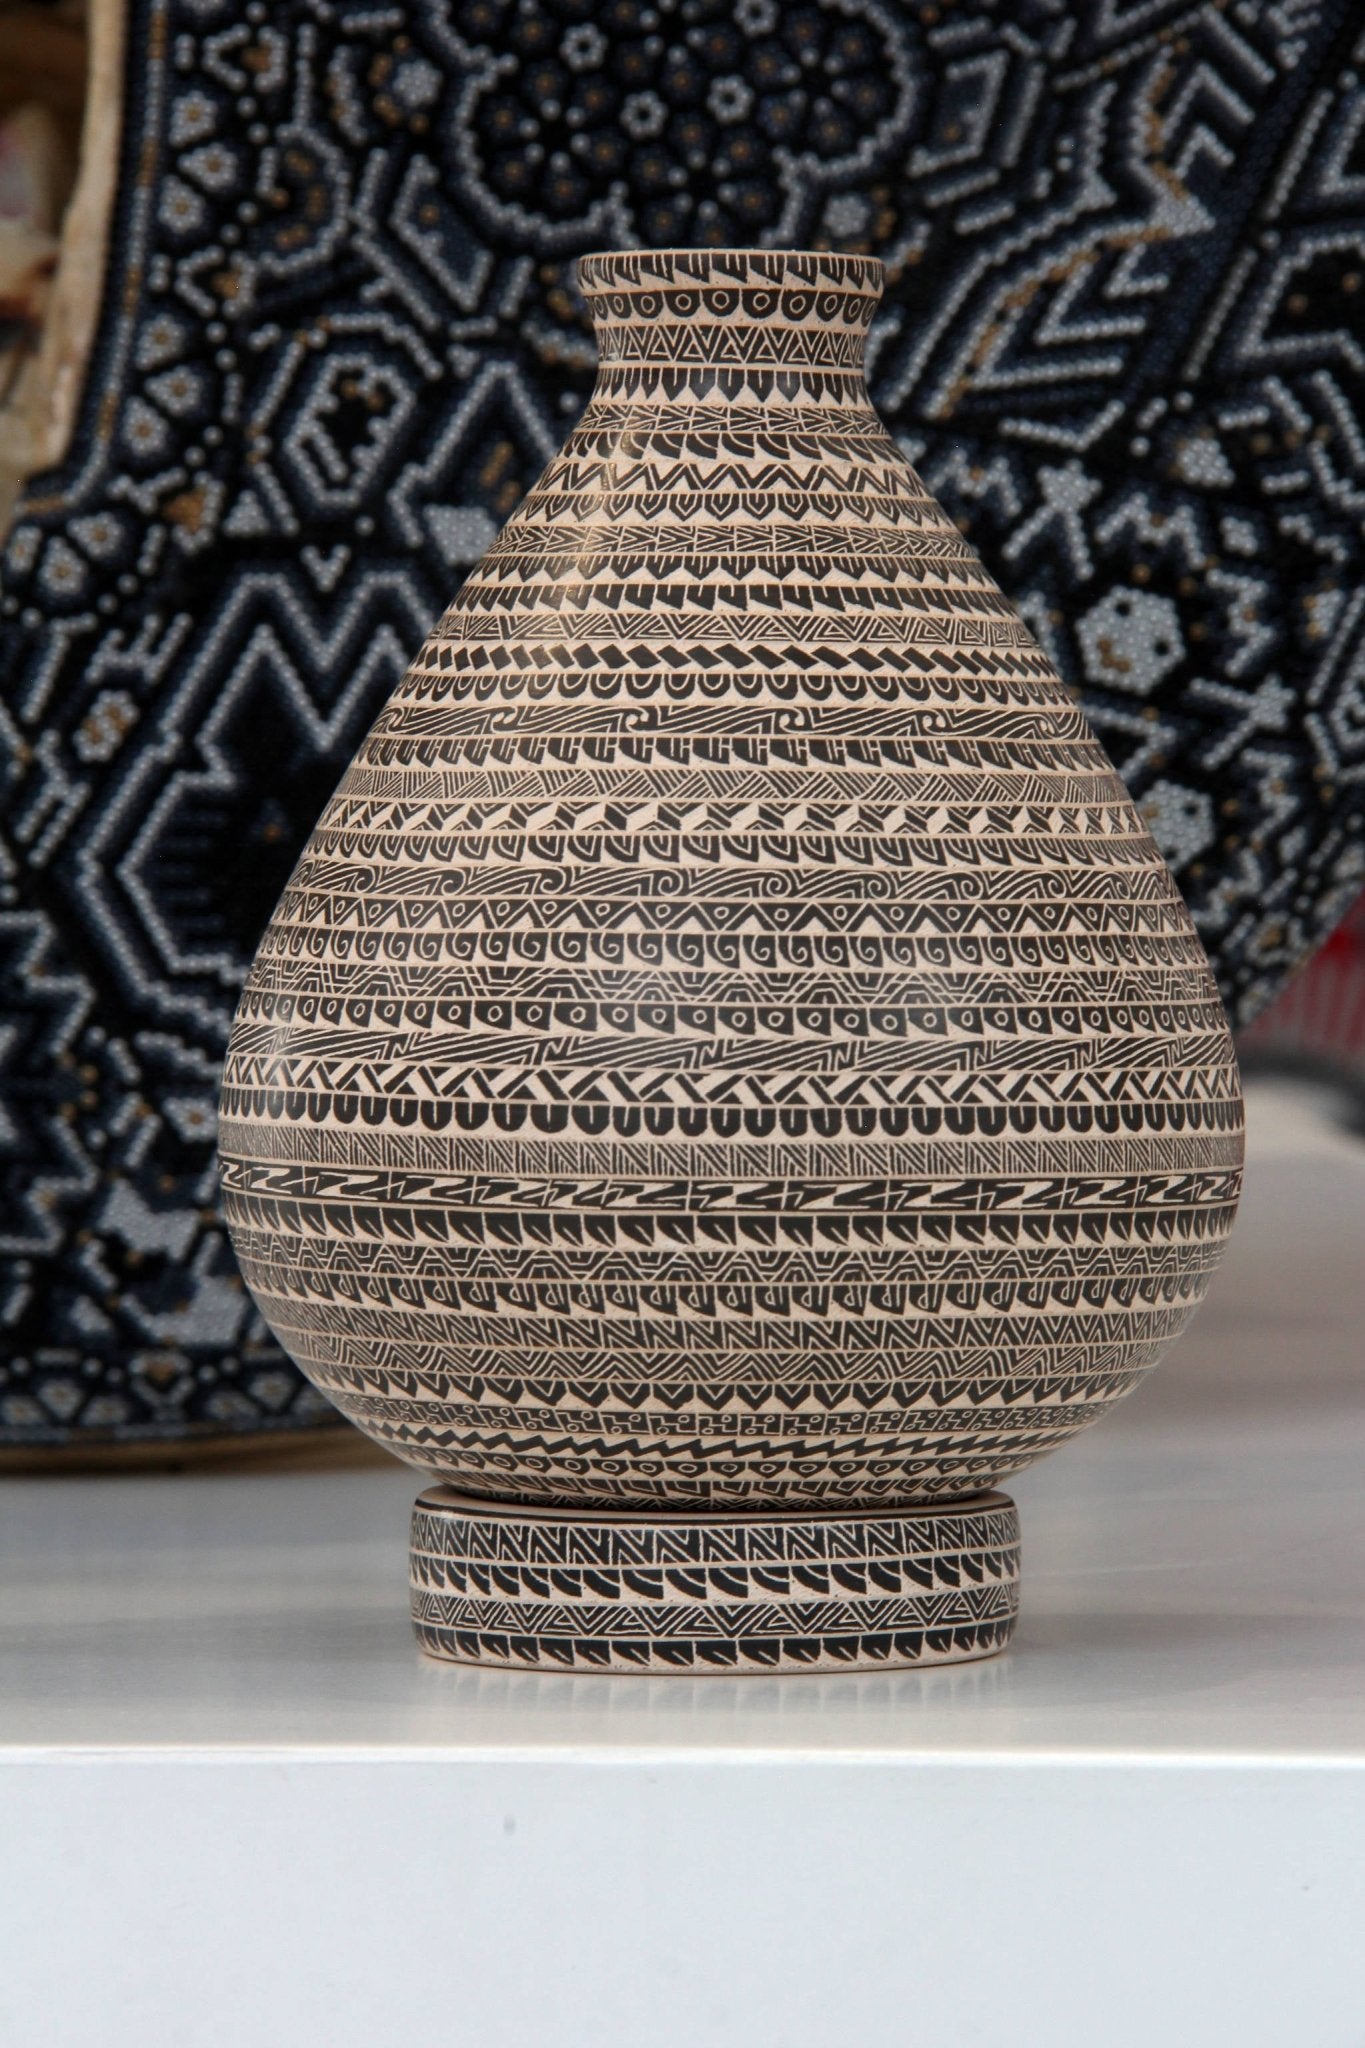 Mata Ortiz-Keramik - Feines Sgraffito-Mittelstück - Huichol-Kunst - Marakame